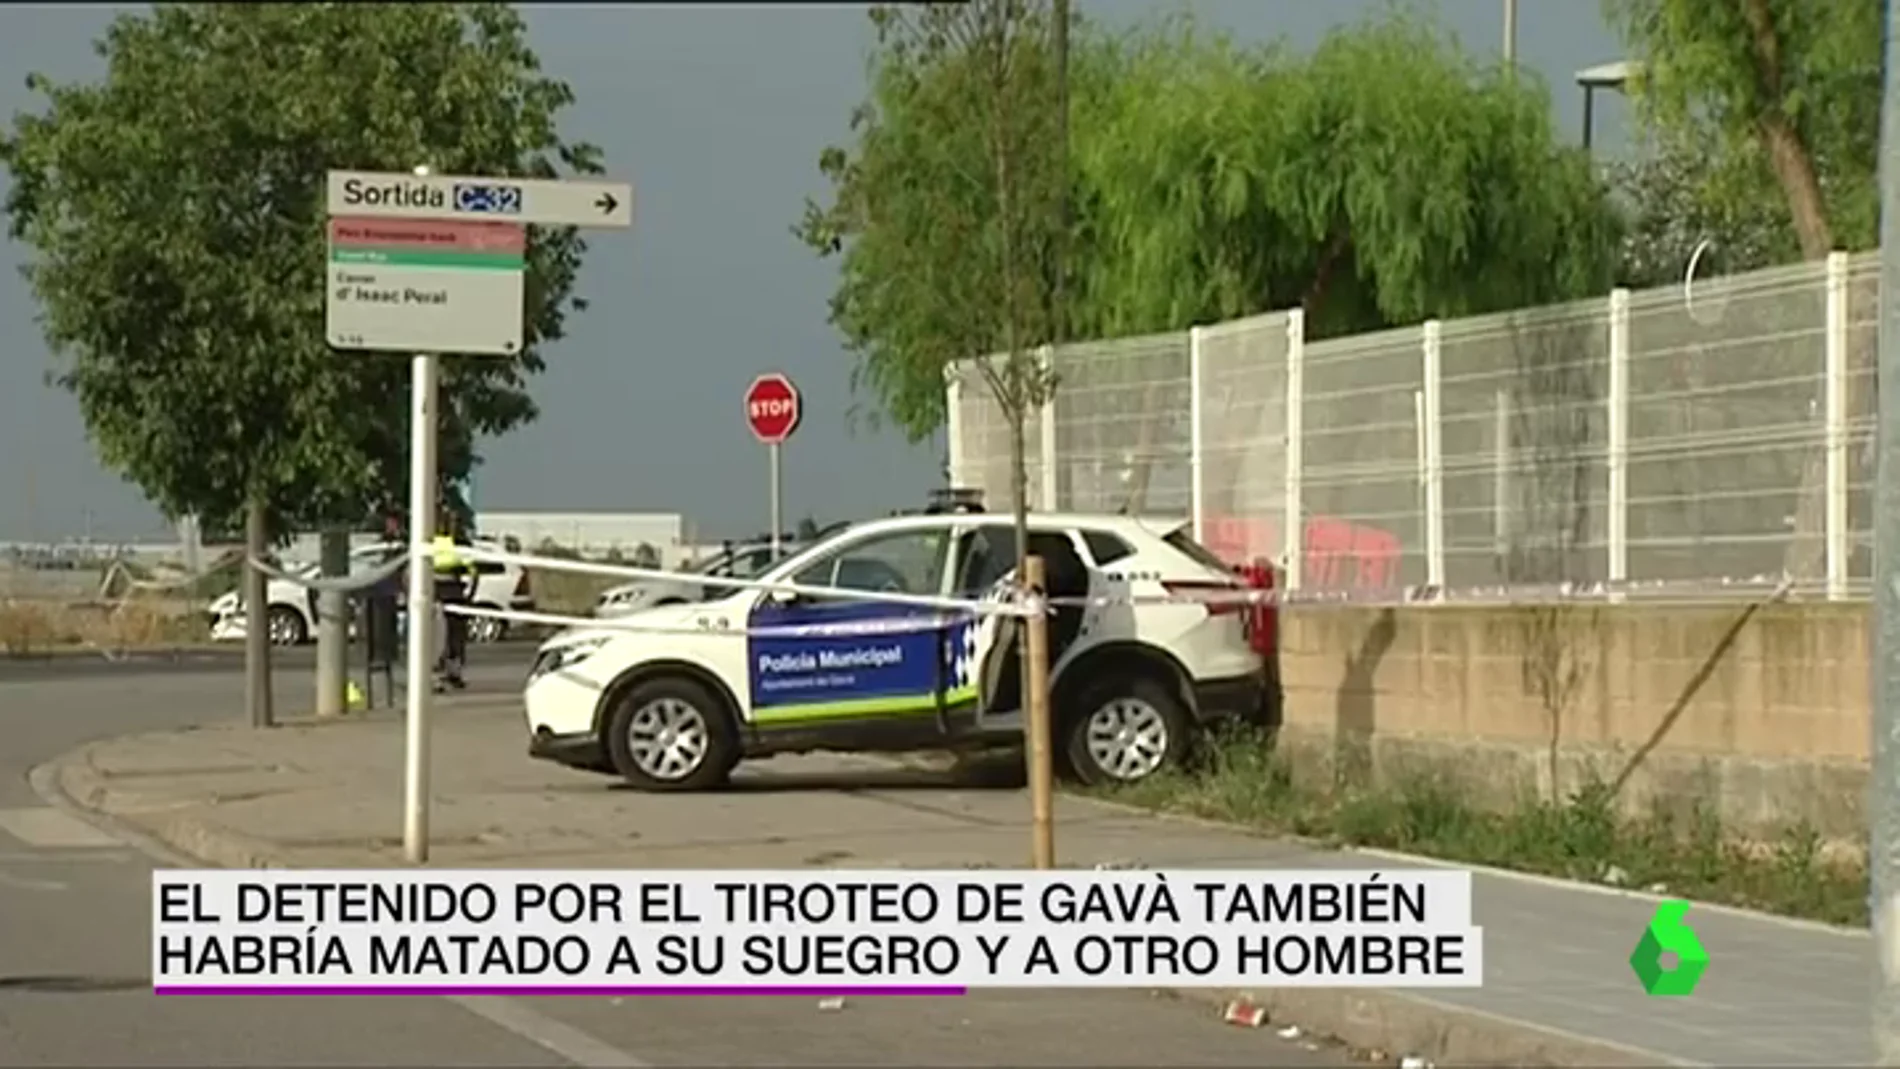 El detenido por el tiroteo en Gavà también habría matado a otros dos hombres